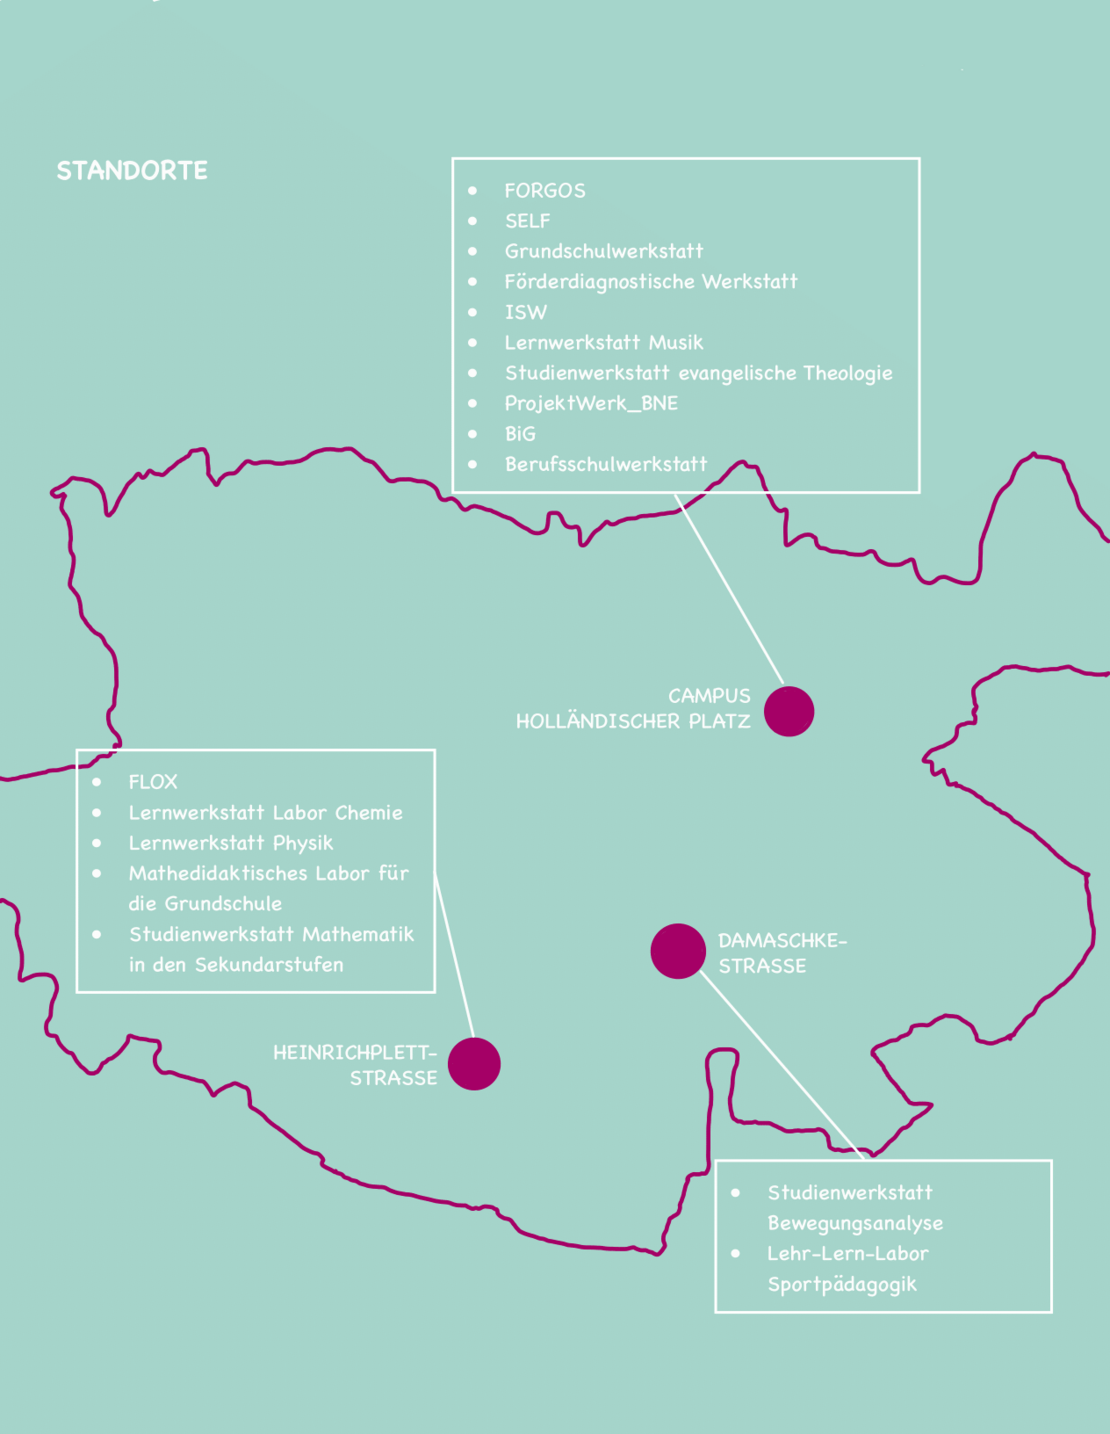 Die Karte zeigt alle Standorte der Studienwerkstätten und Lehr-Lern-Labore der Universität Kassel.